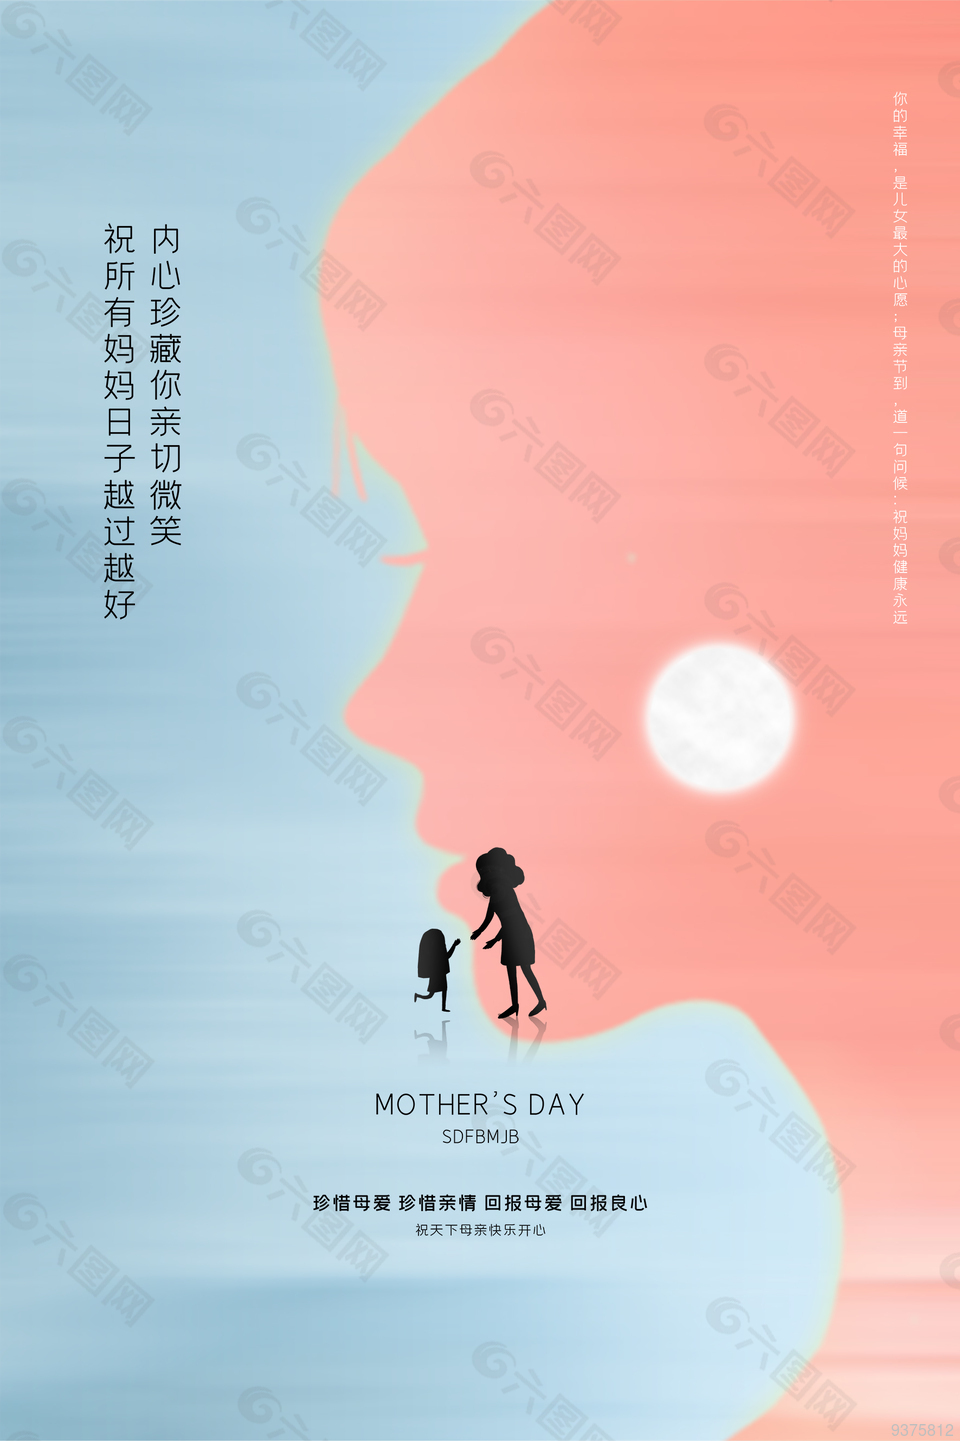 简易母亲节节日宣传海报